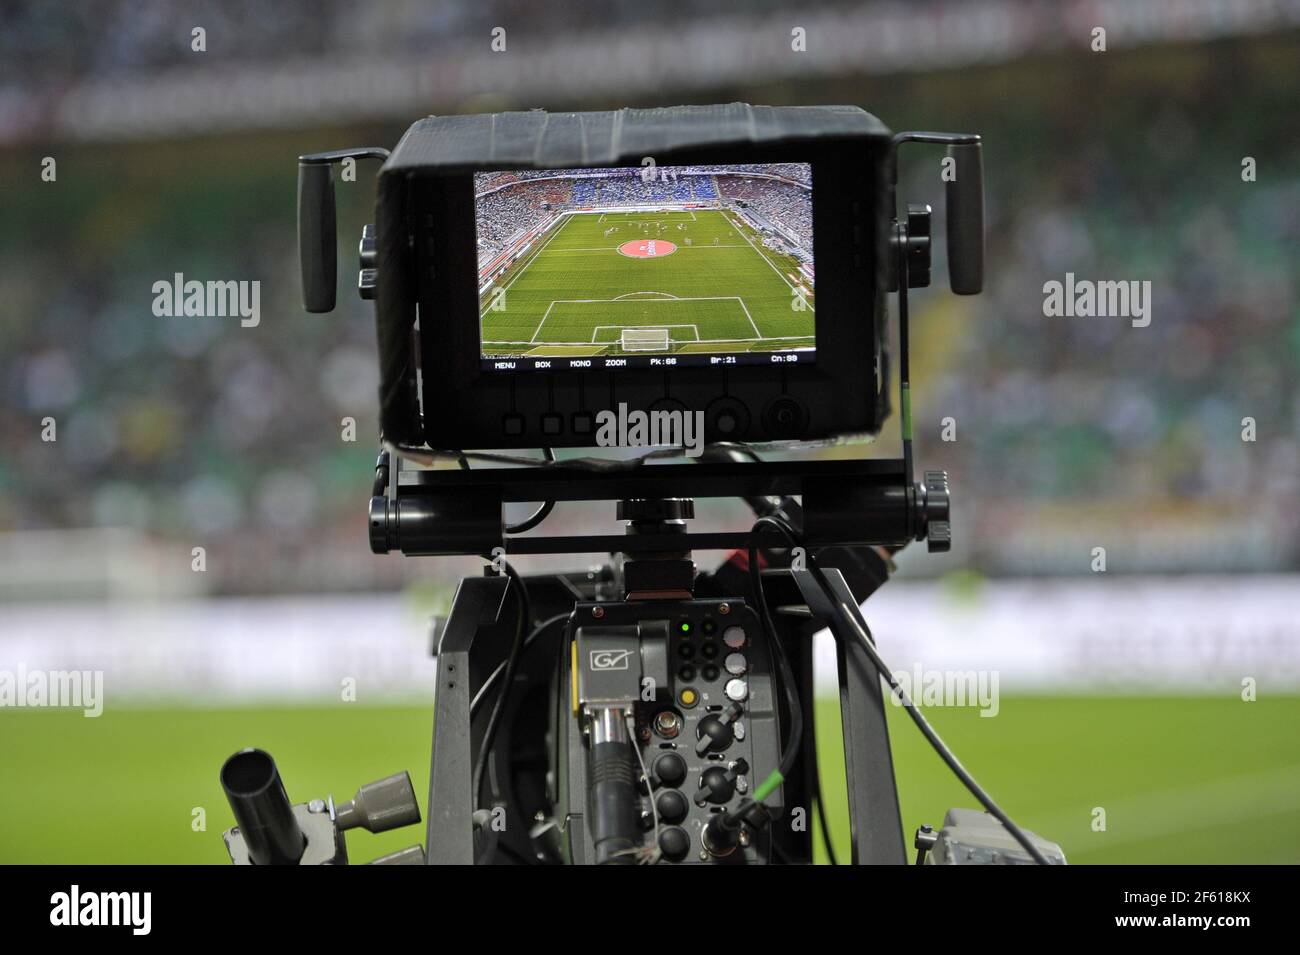 El estadio de fútbol de San Siro se ve a través del monitor de una cámara de televisión, en Milán. Foto de stock